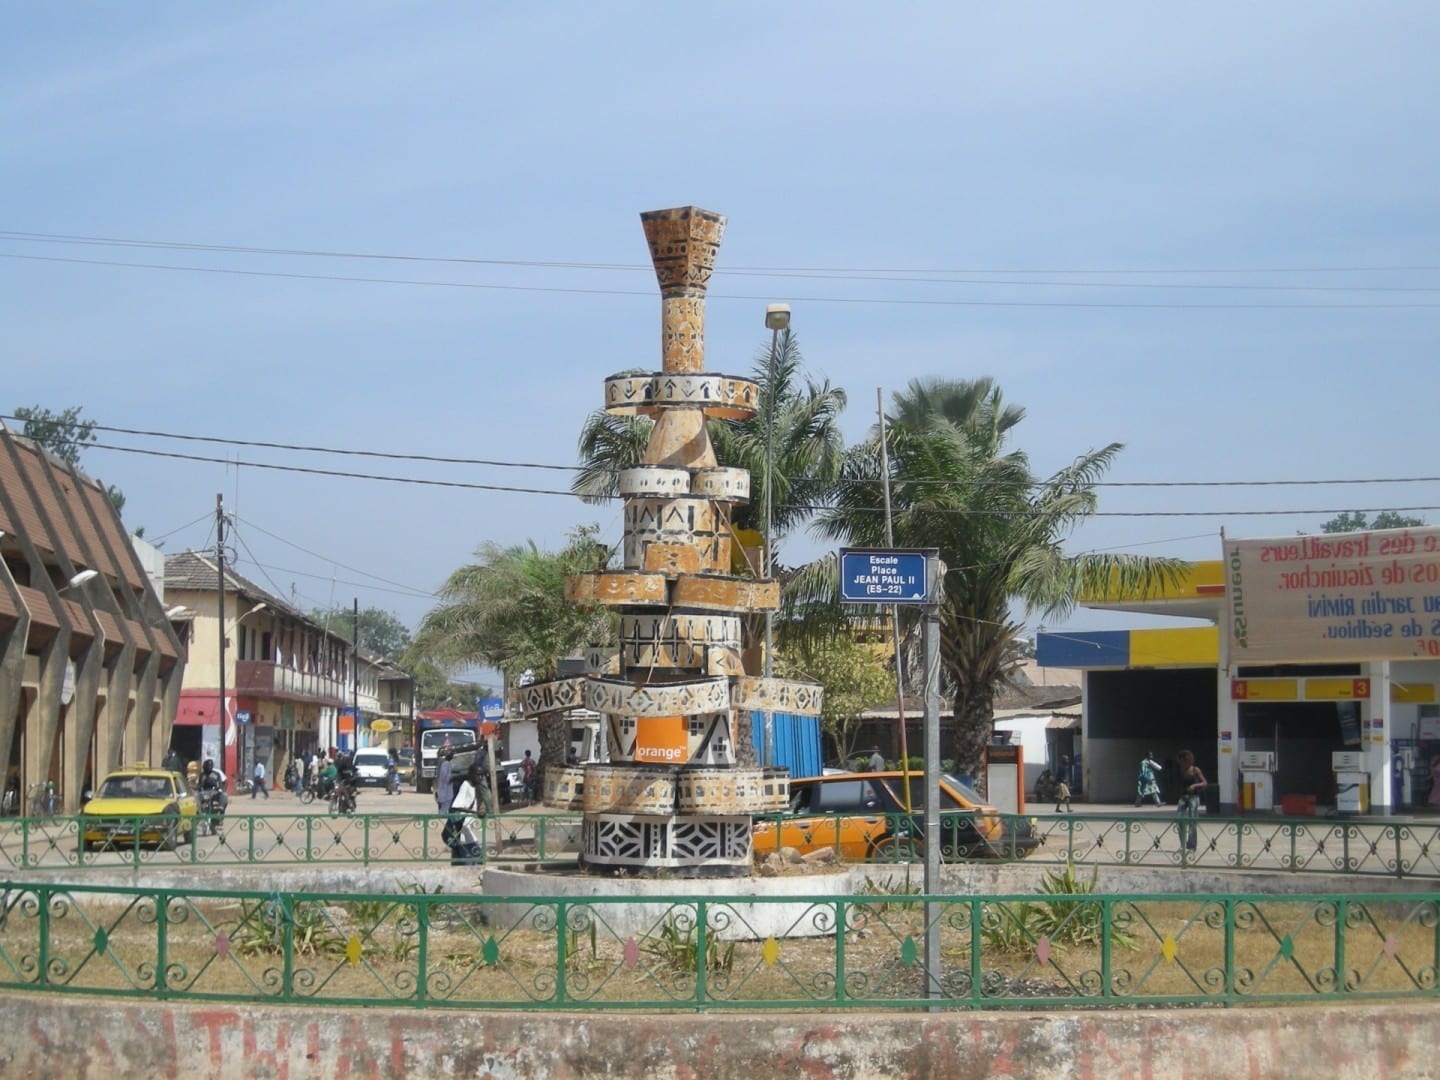 Coloca a Juan Pablo II en la sección de la Escala de la ciudad Ziguinchor Senegal